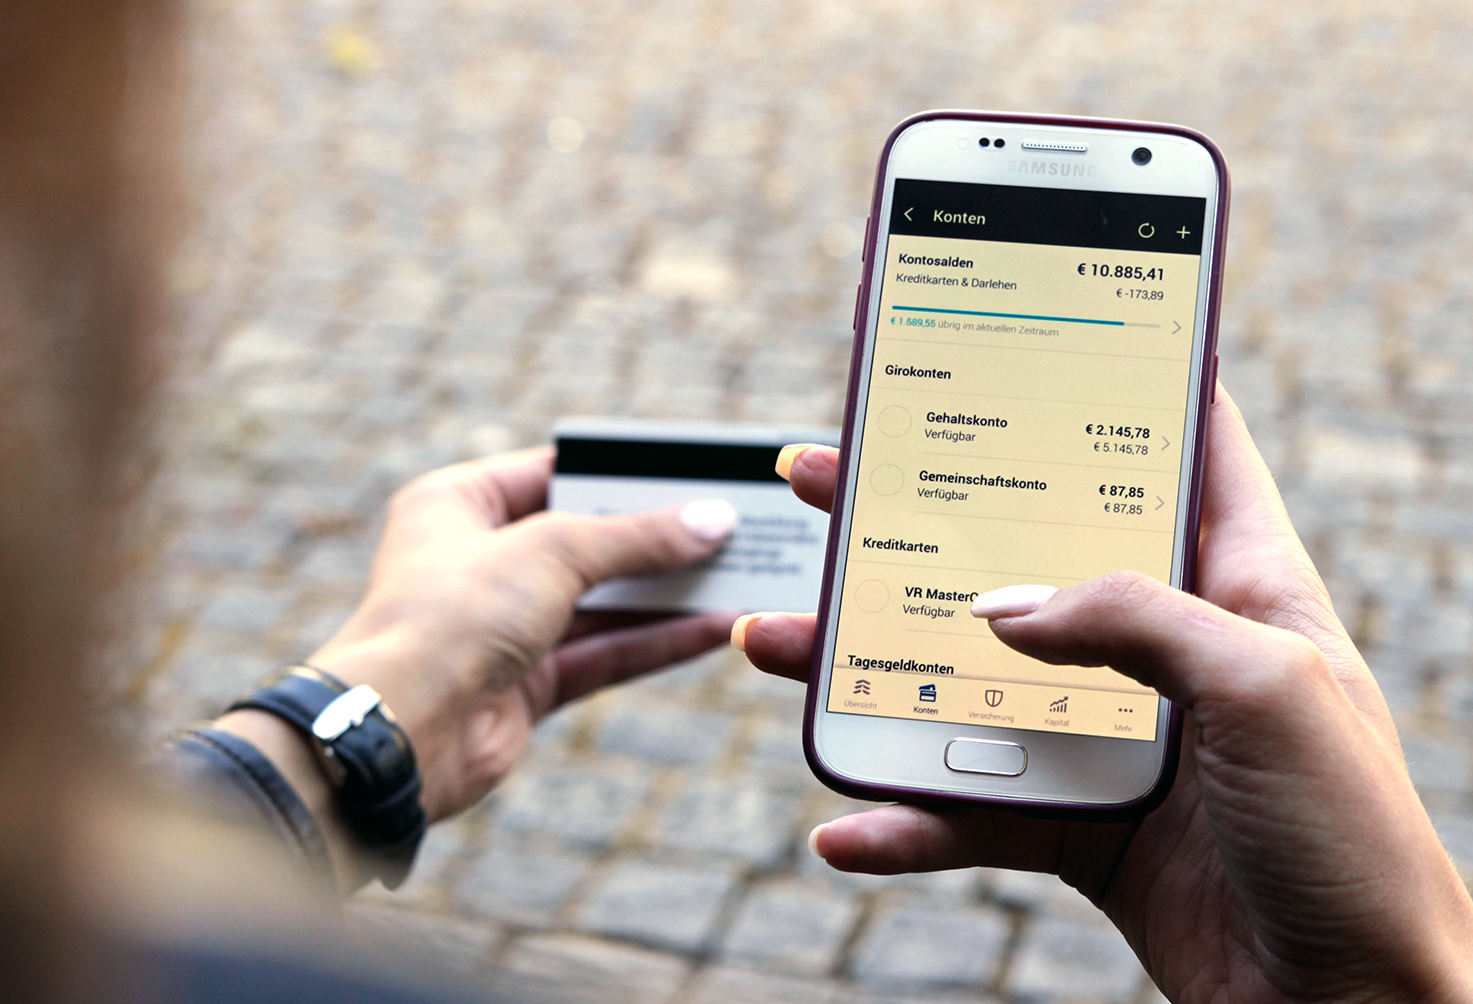 Frau macht Online-Banking auf dem Smartphone, daneben Kreditkarte